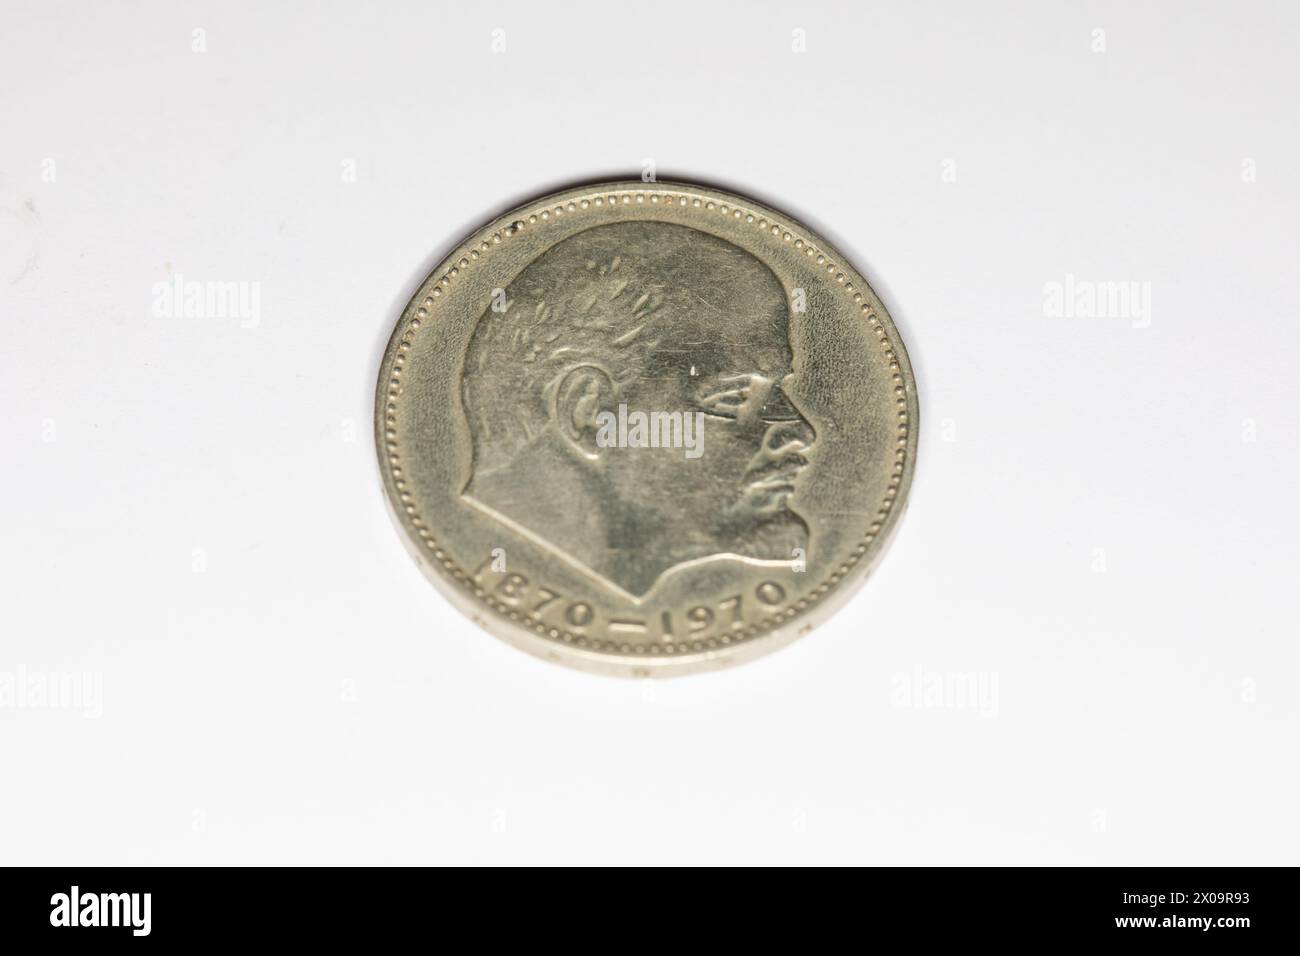 Russian Lenin 100th Anniversary commemorative coin. Stock Photo